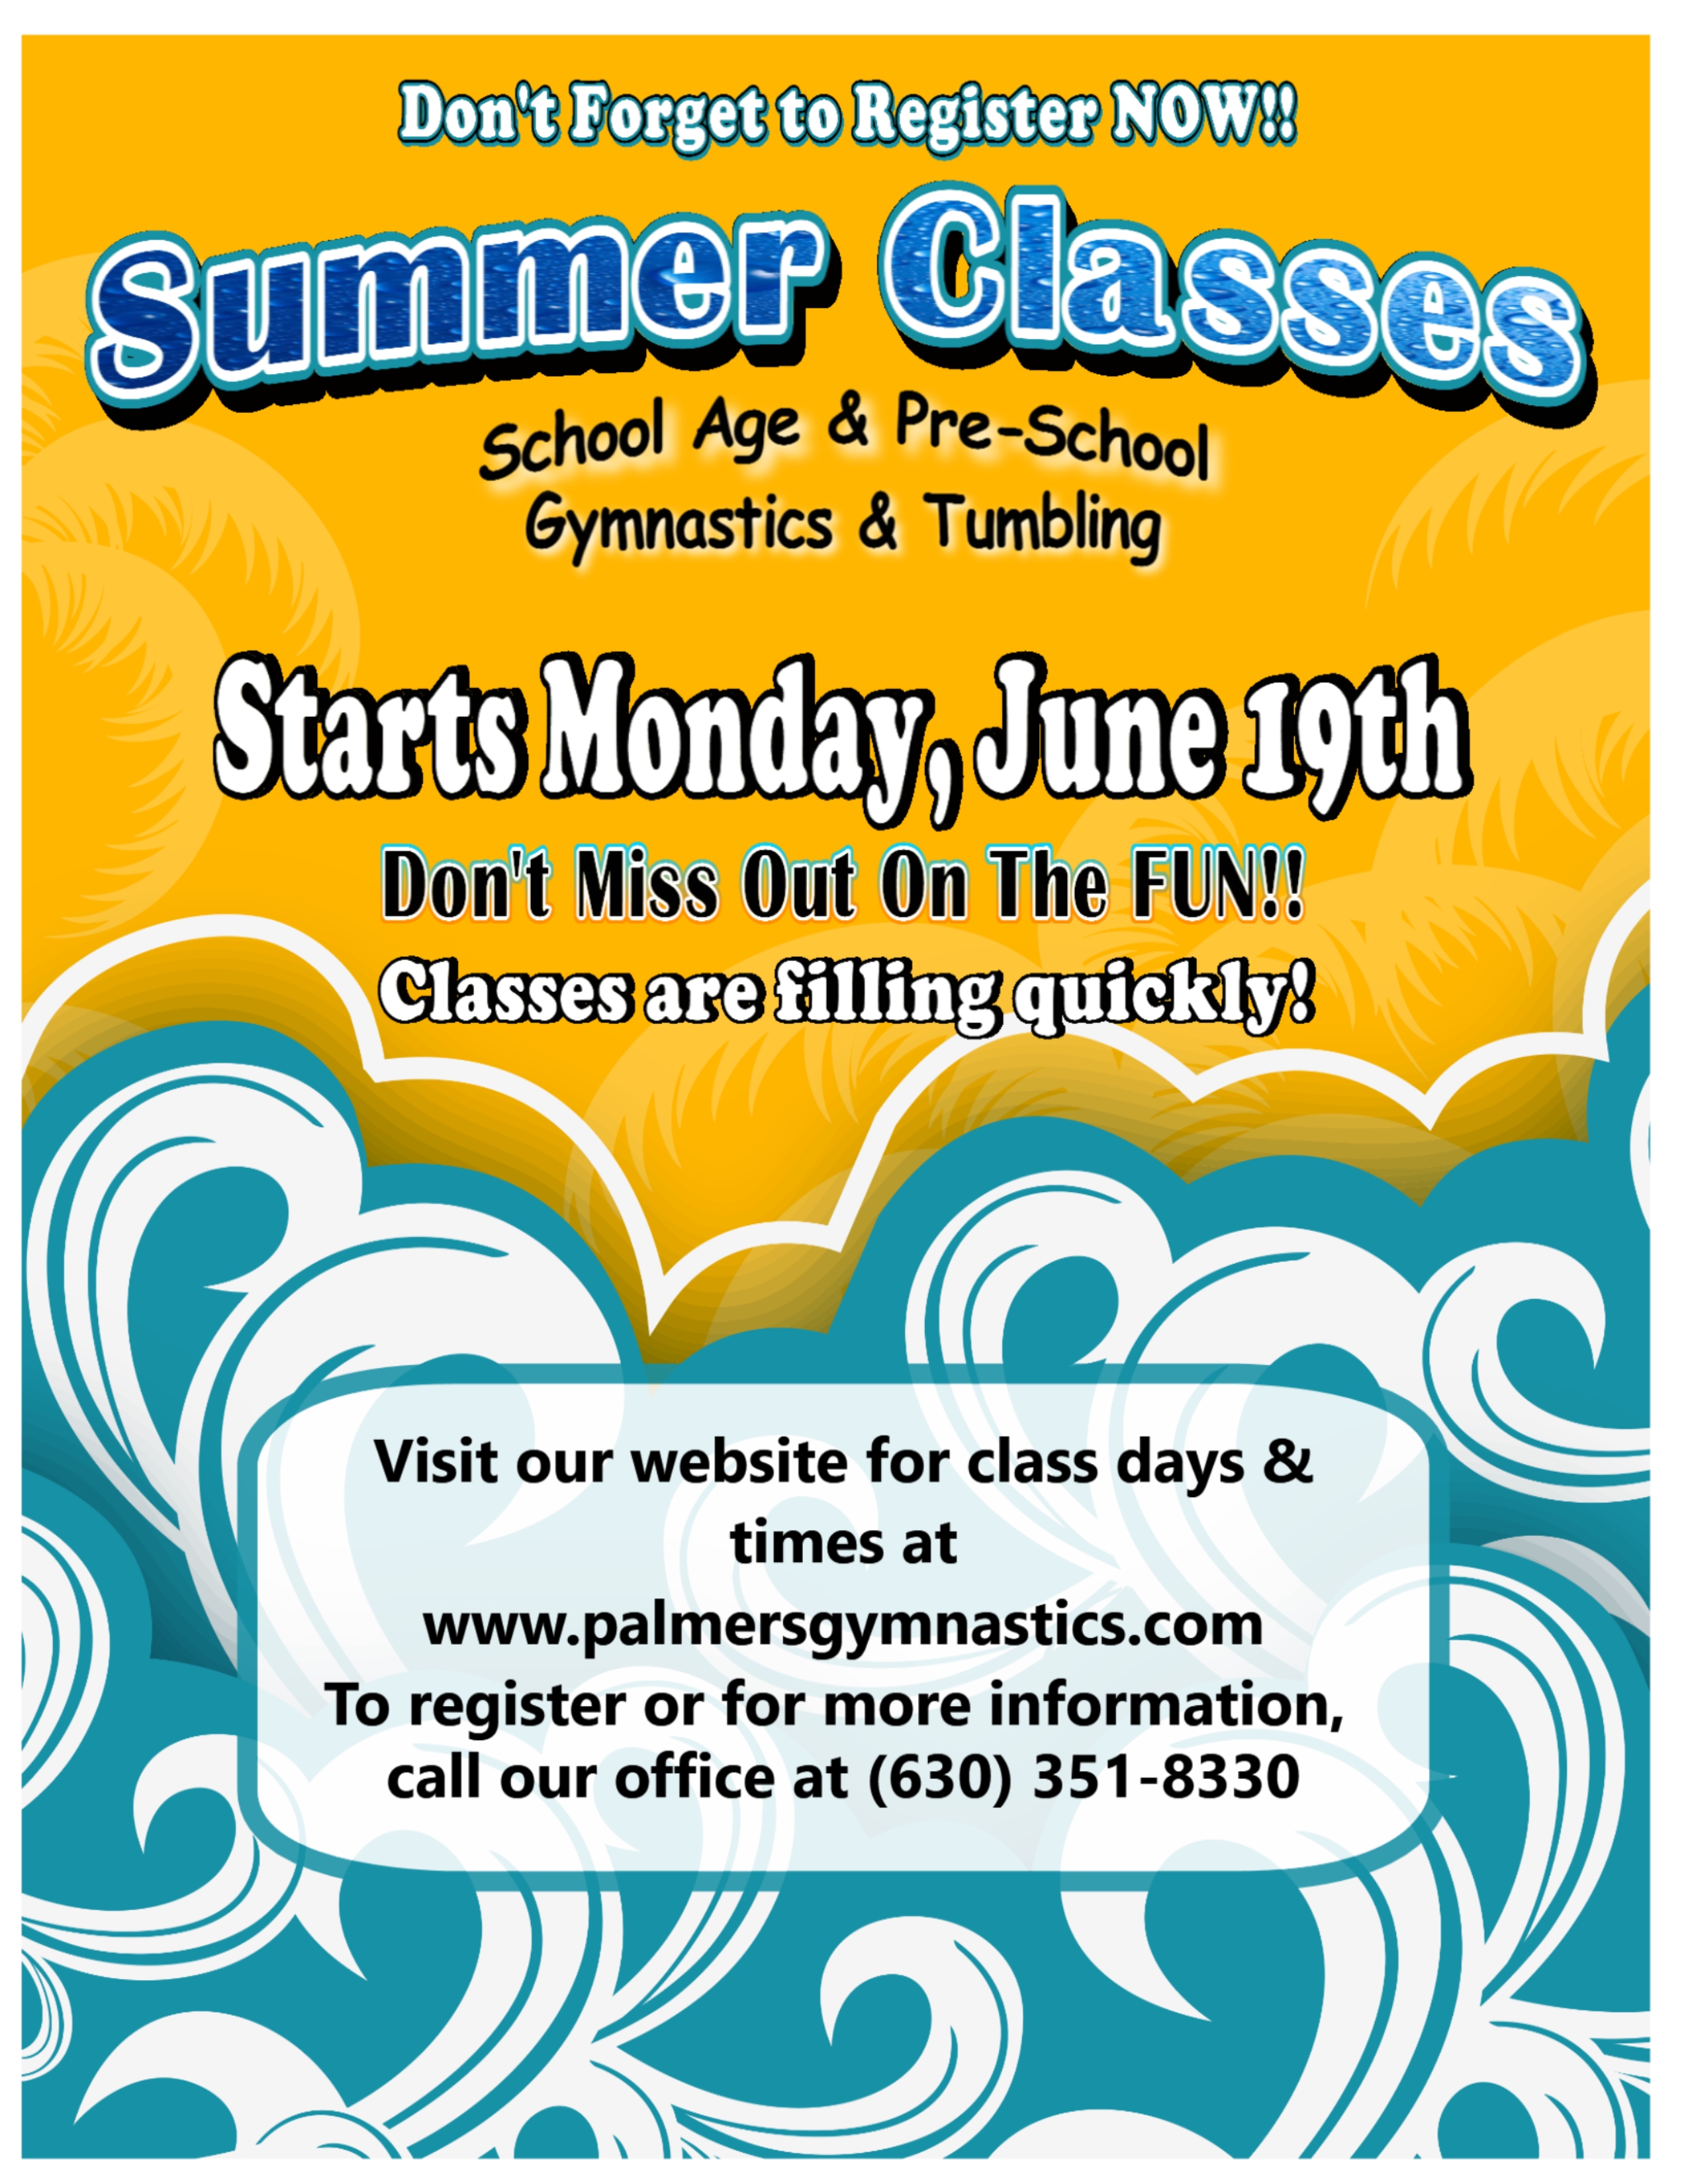 Register for Summer Classes 2